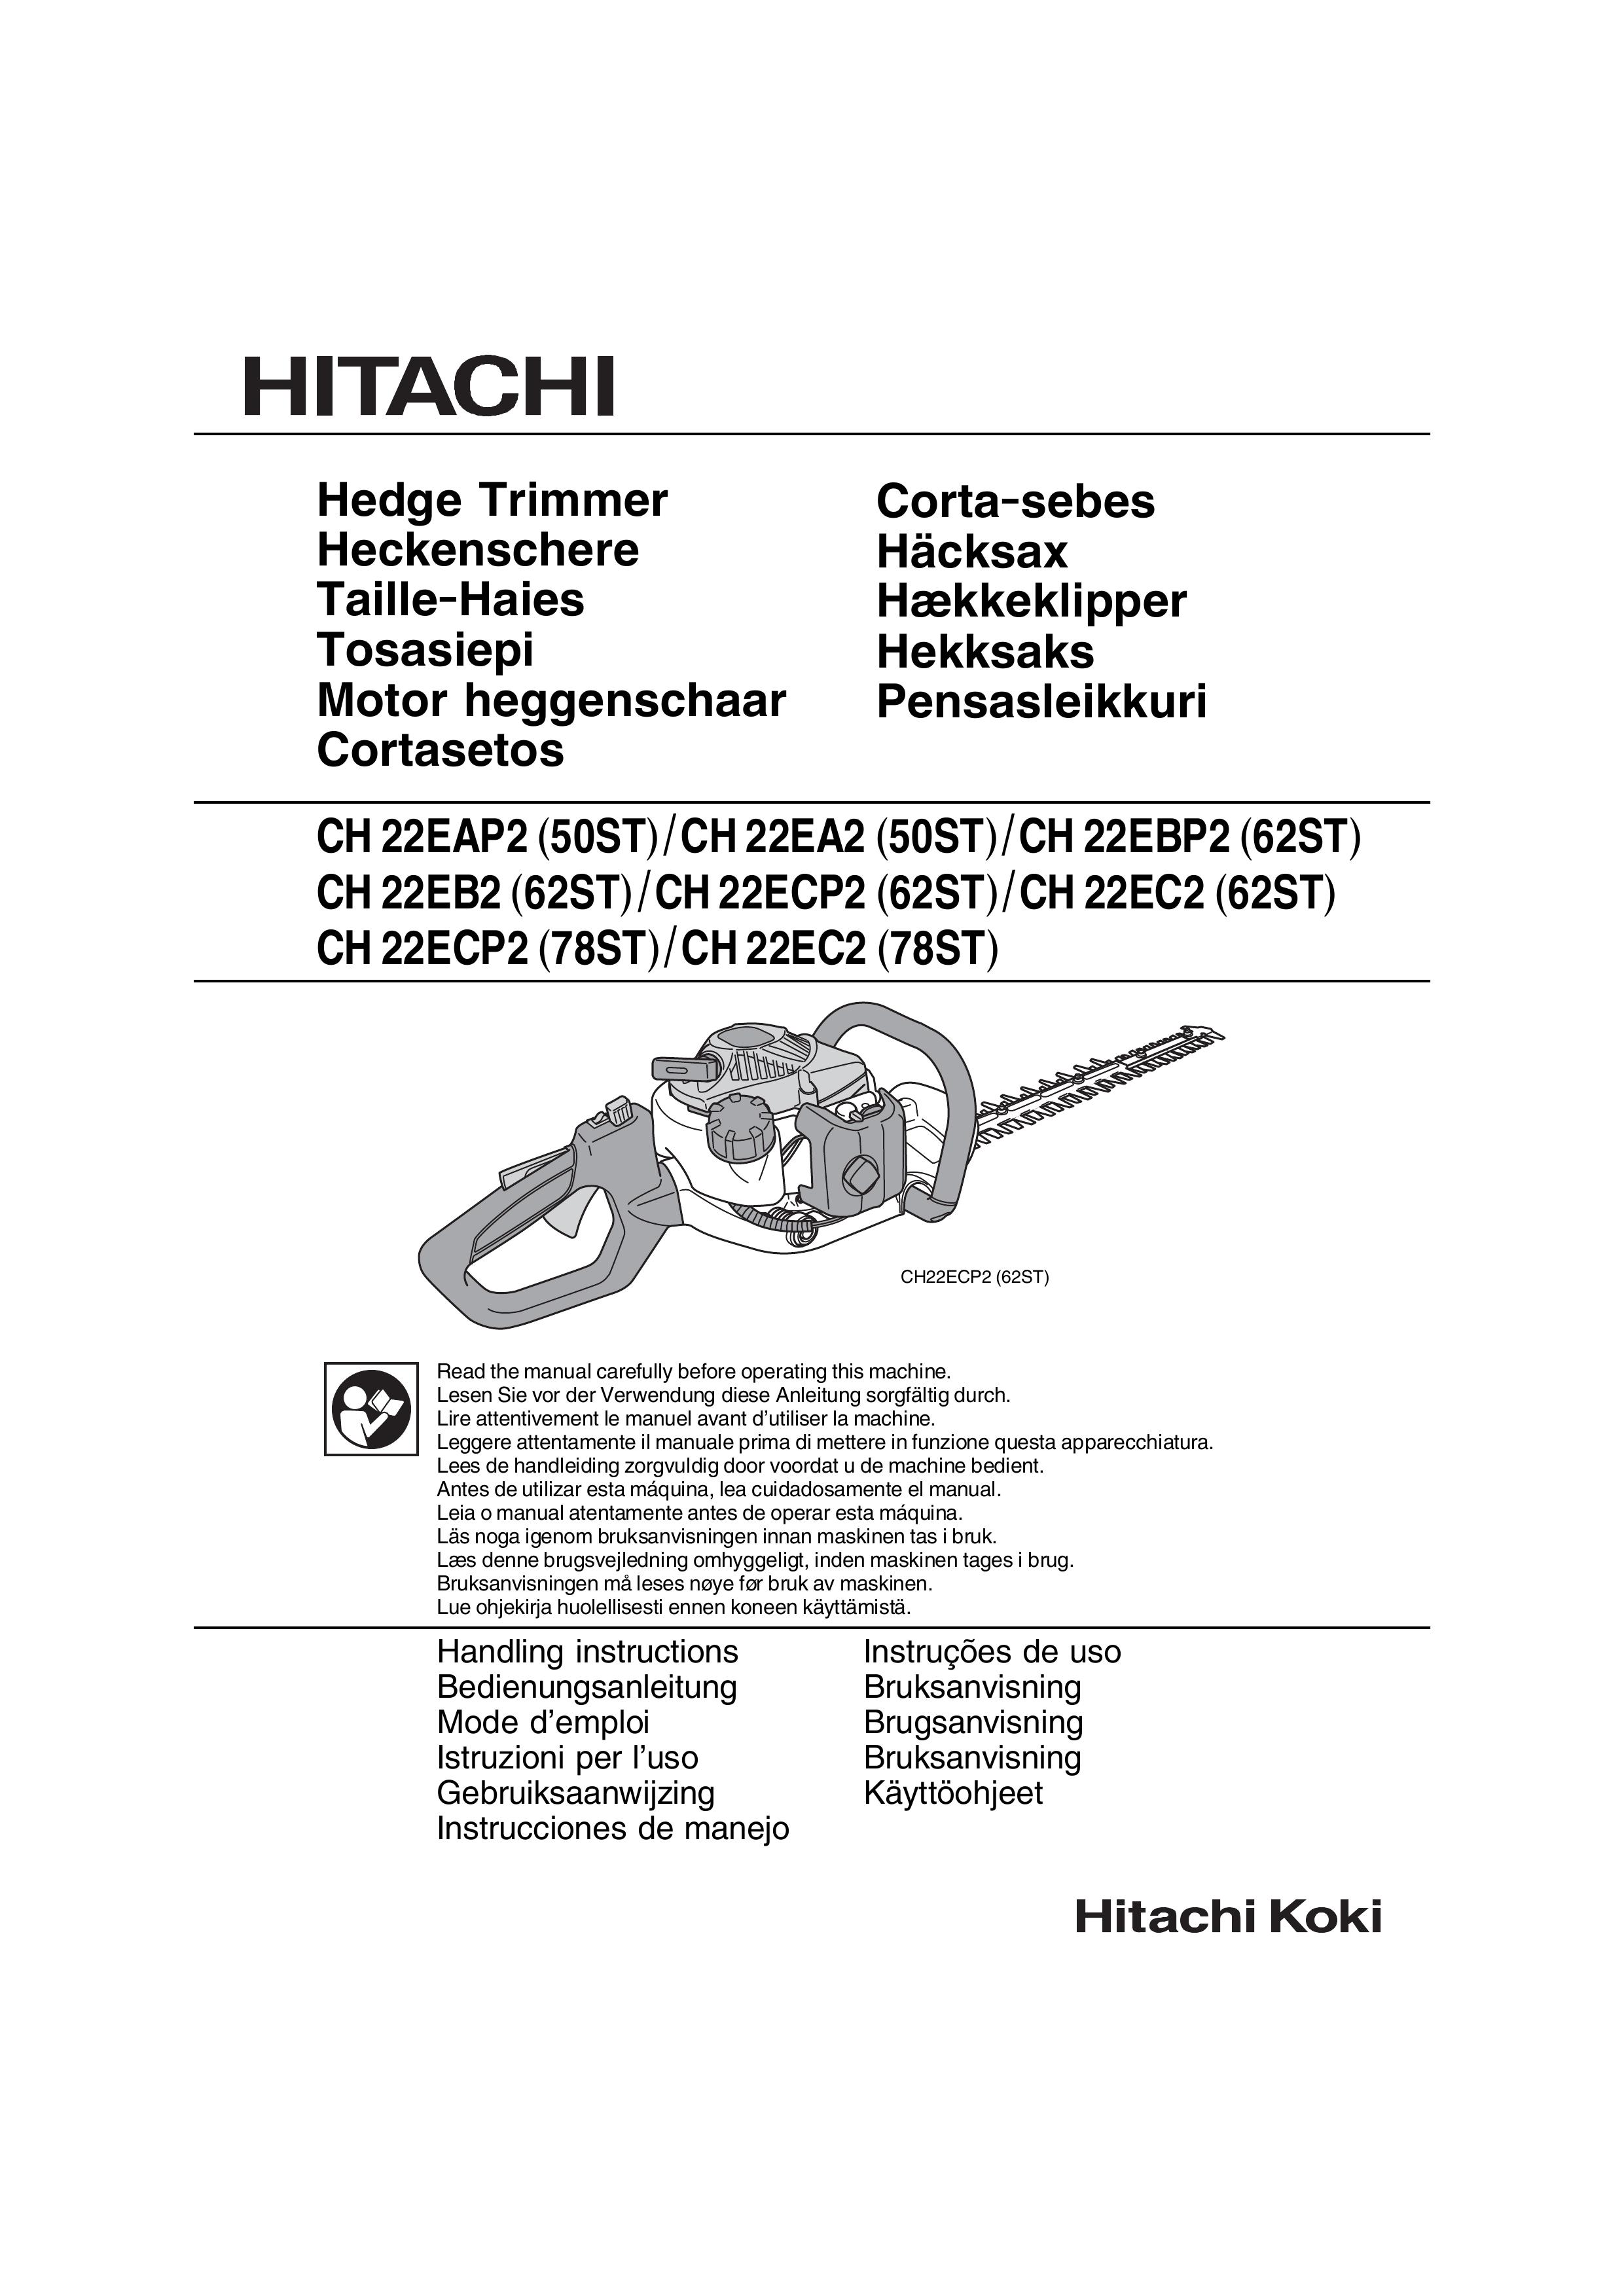 Hitachi CH 22EBP2 (62ST) Trimmer User Manual